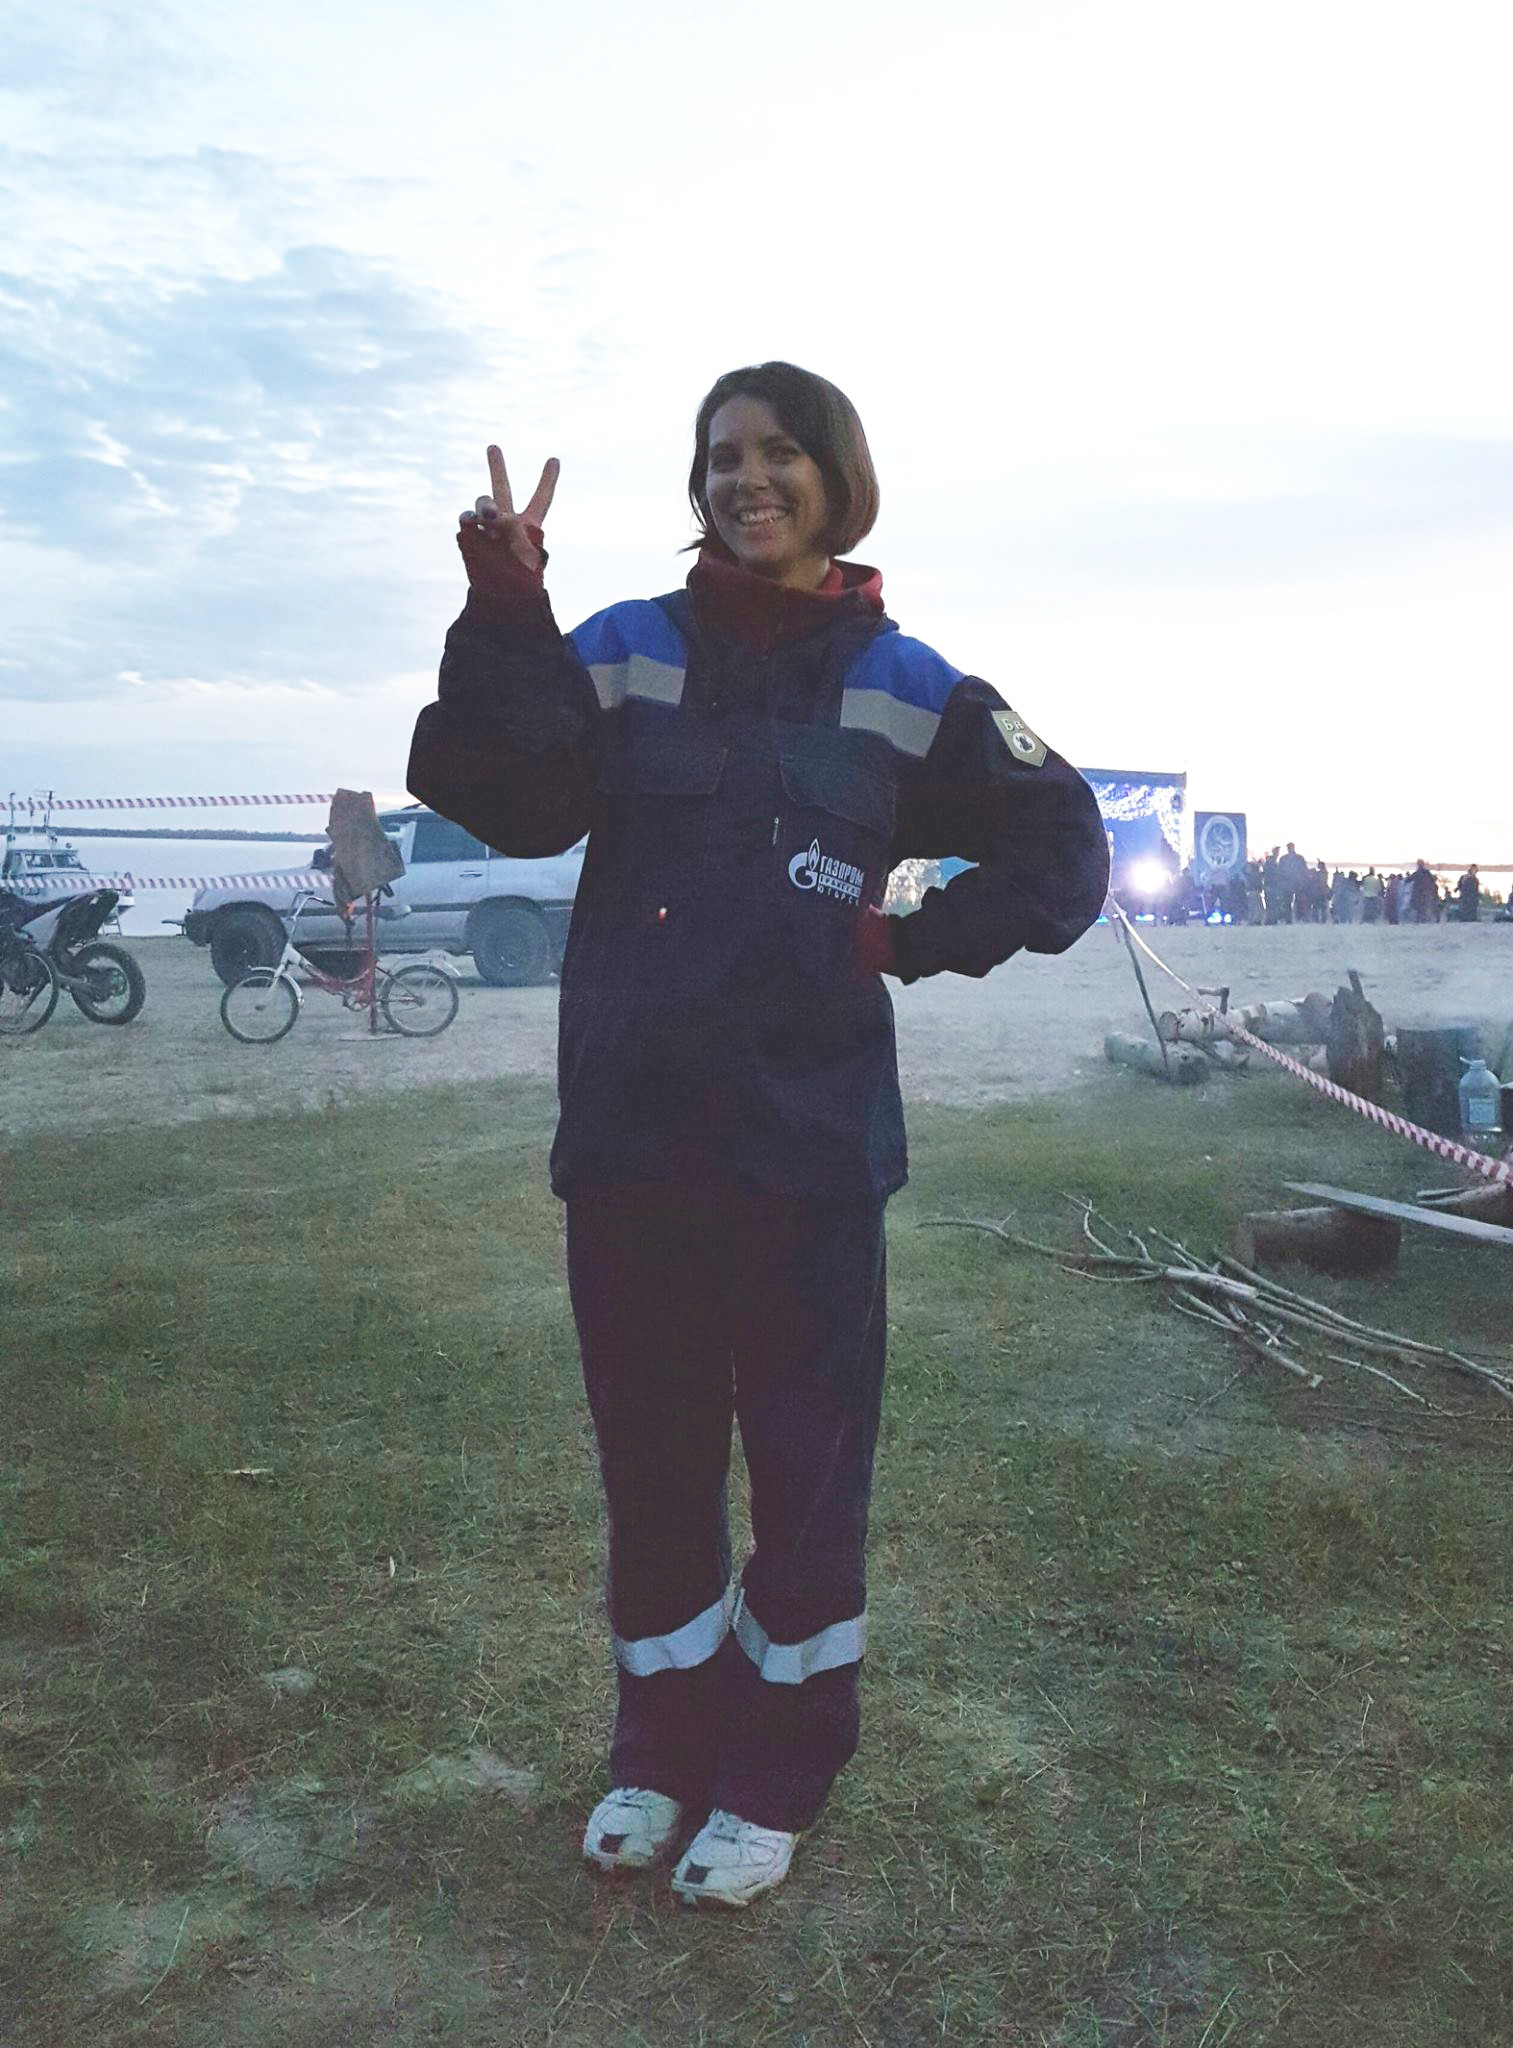 Daša na festivalu za Gazpromove delavce na reki Ob pri vasi Peregrebnoje. Ko se je malce shladilo, si je nadela delovno obleko, ki jo običajno nosi pri plinskem polju 300 km bolj severno. Ta fotografija je bila dejansko posneta ob polnoči!